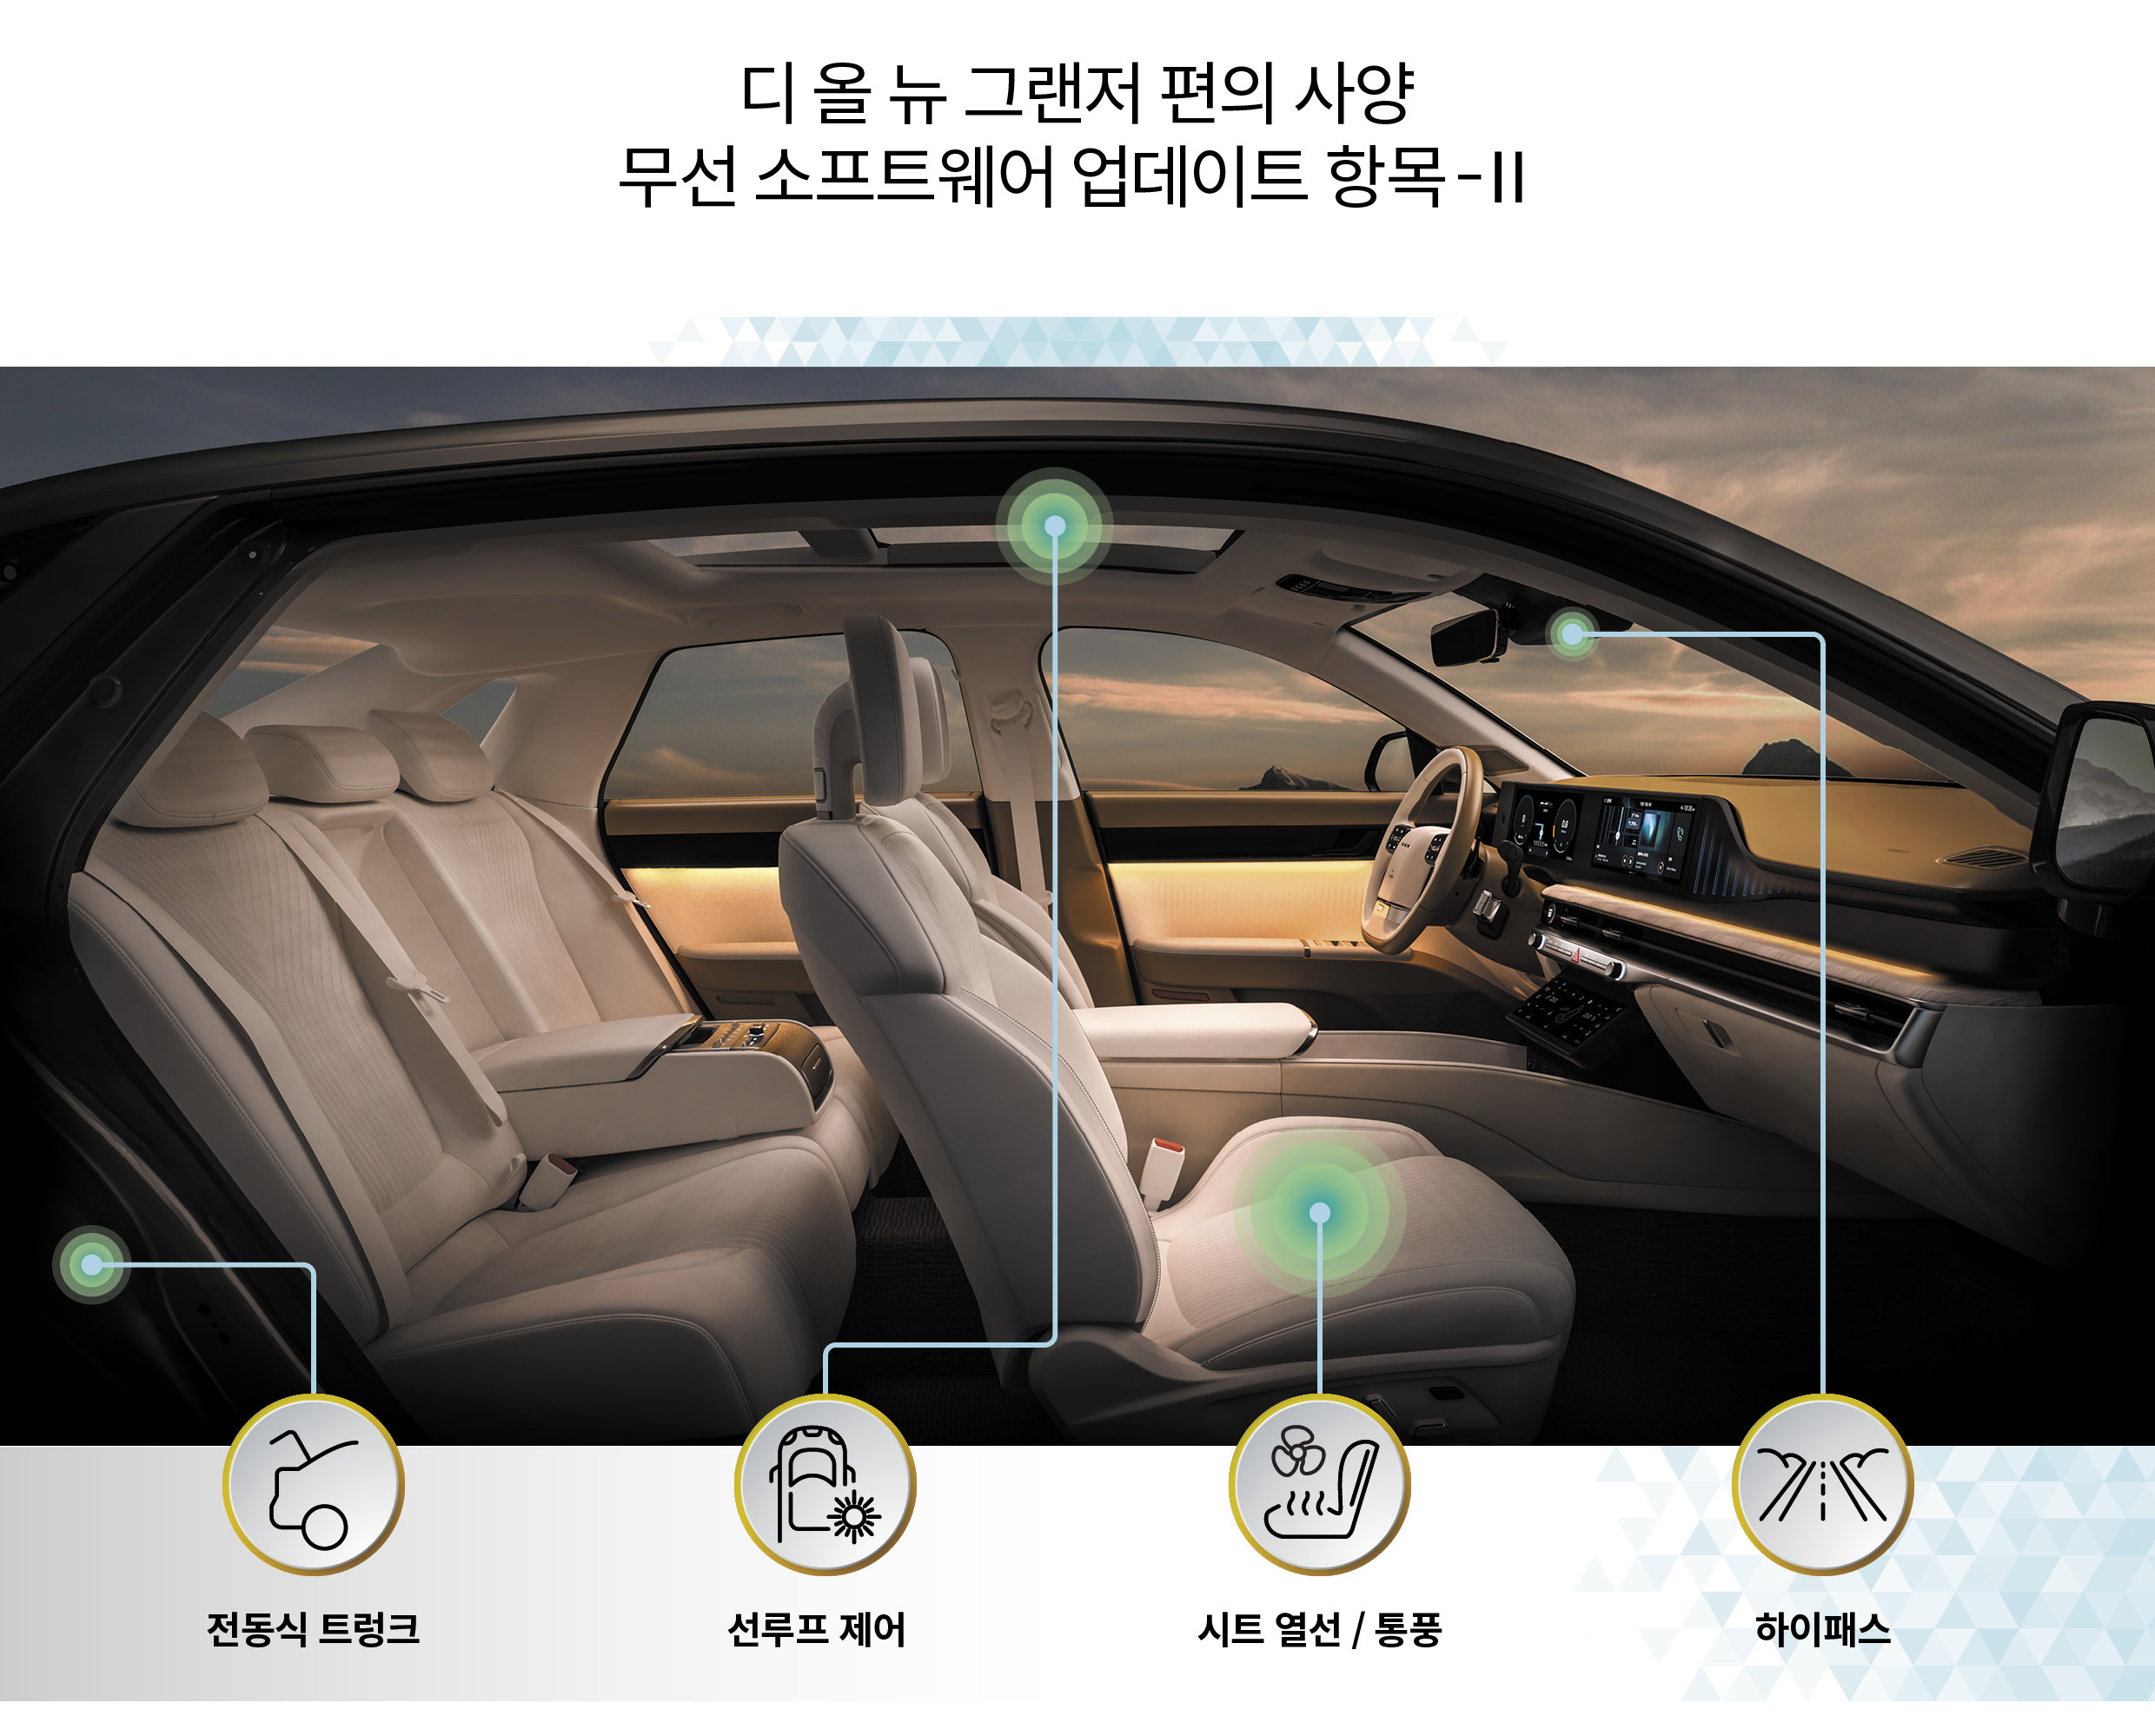 현대자동차 디 올 뉴 그랜저의 편의 사양 관련 무선 소프트웨어 업데이트를 표현한 그림